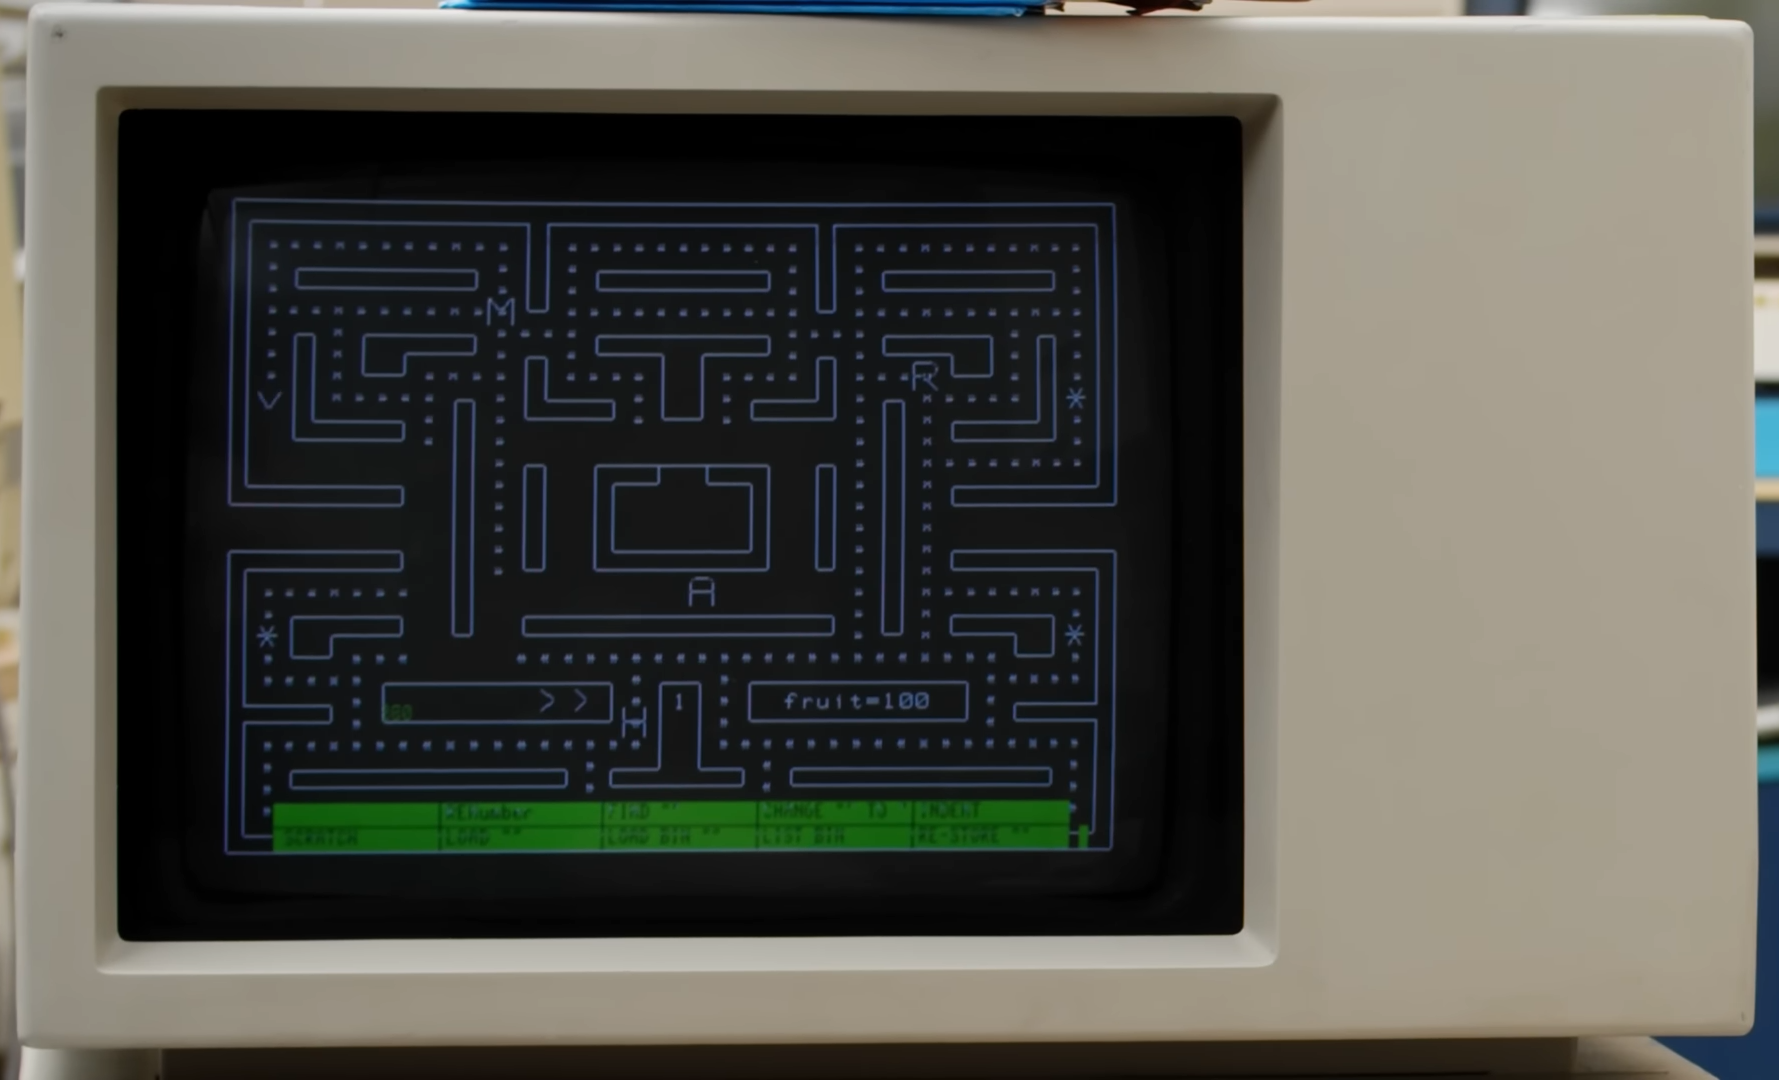 An HP9863C running Pac-Man